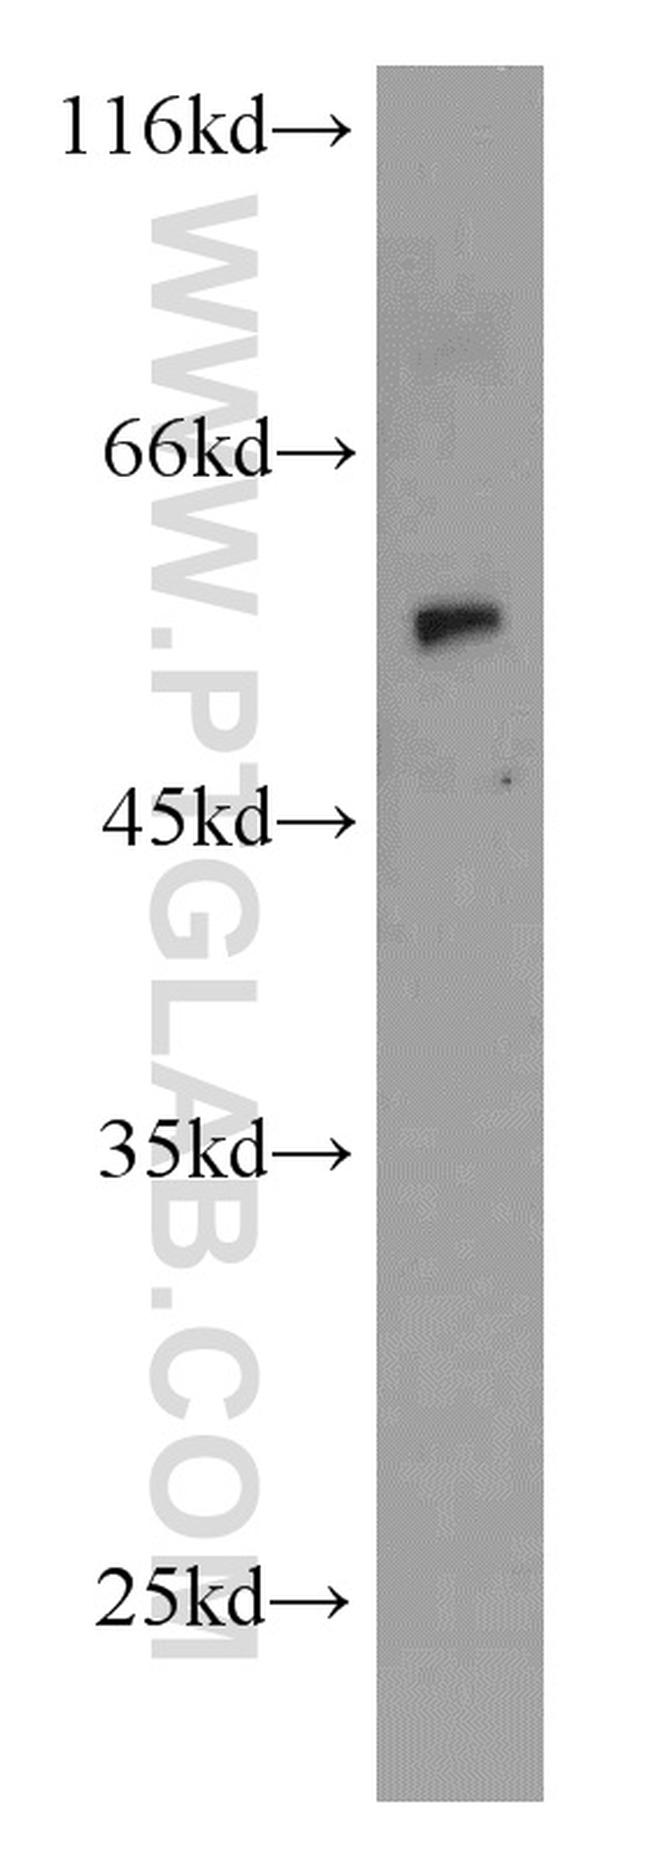 CYP1A1 Antibody in Western Blot (WB)